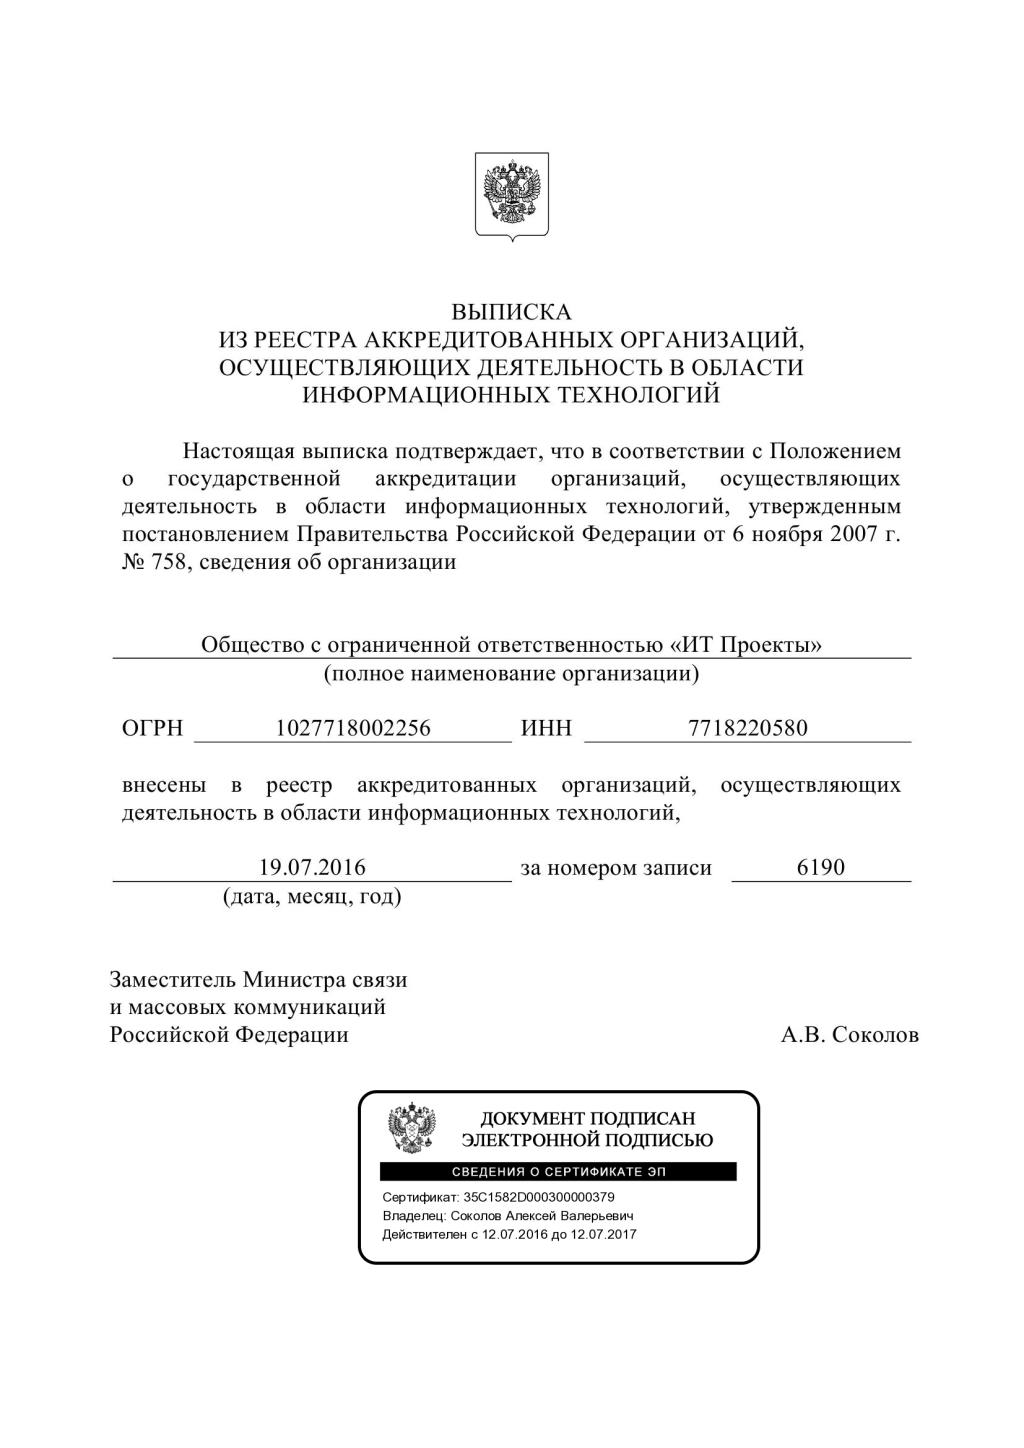 Государственная аккредитация в Минкомсвязи России